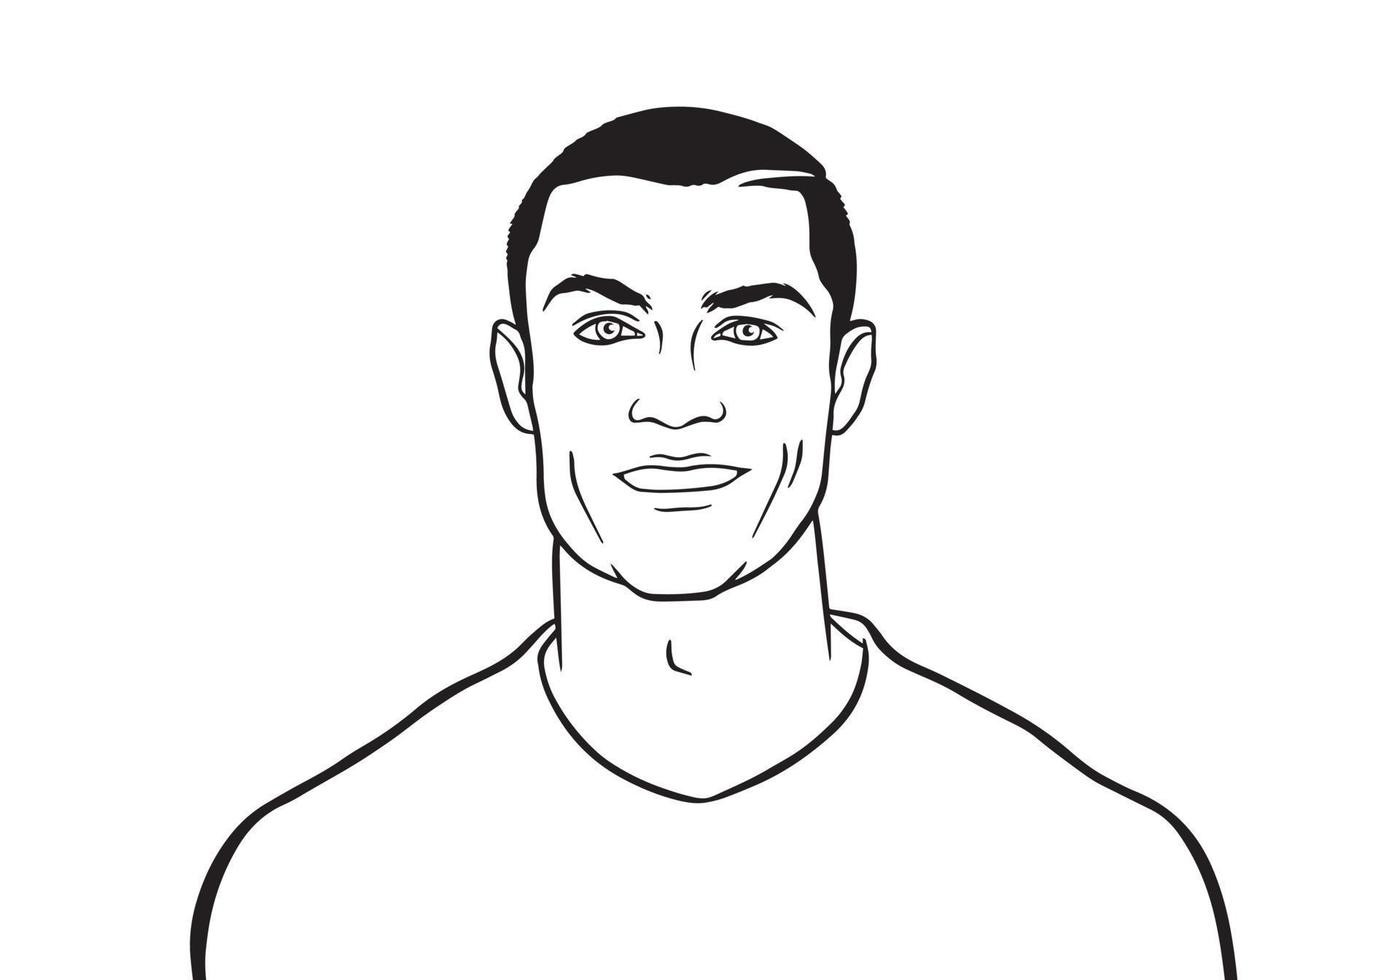 zwart en wit vector portret illustratie van Portugees voetballer Cristiano ronaldo